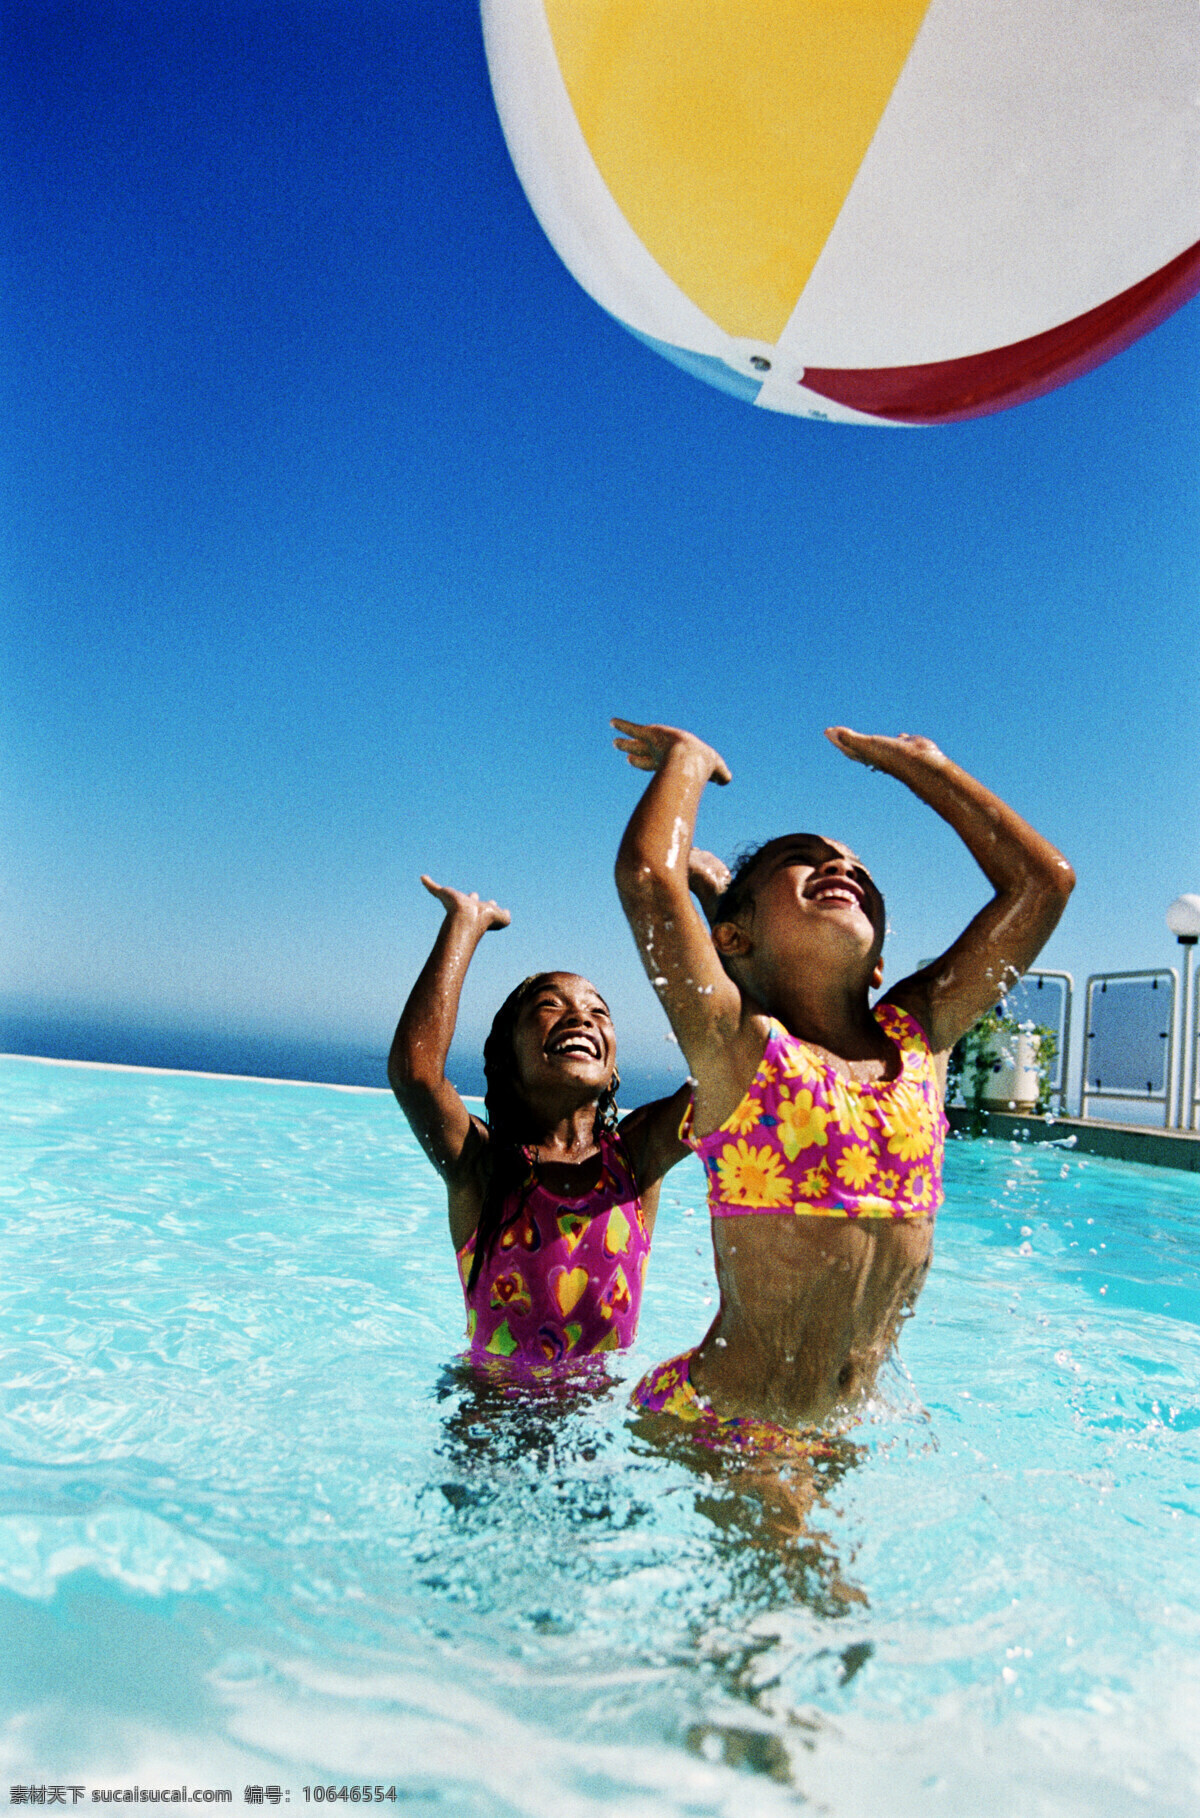 水里 玩 汽 球 人物 水 海水 女孩 小女孩 儿童 国外儿童 人物素材 人物摄影 生活人物 人物图片